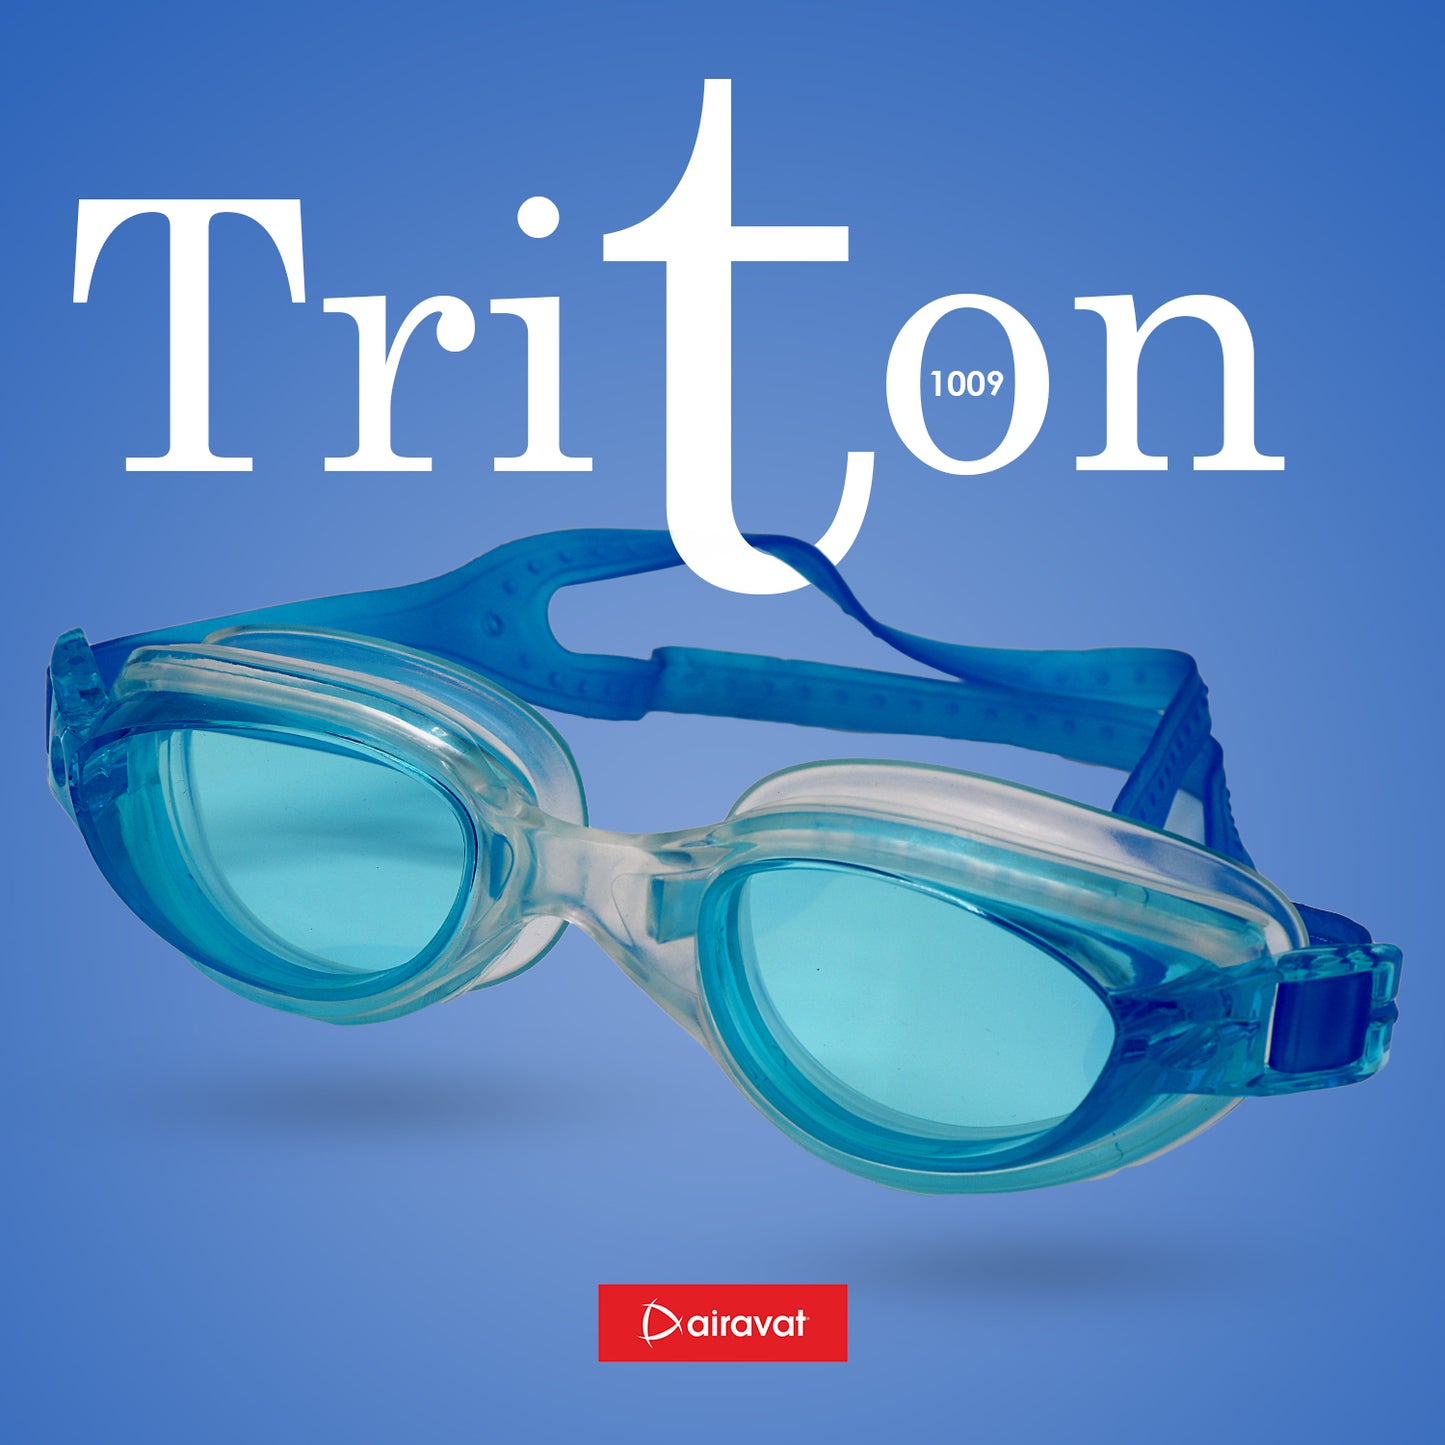 TRITON 1009